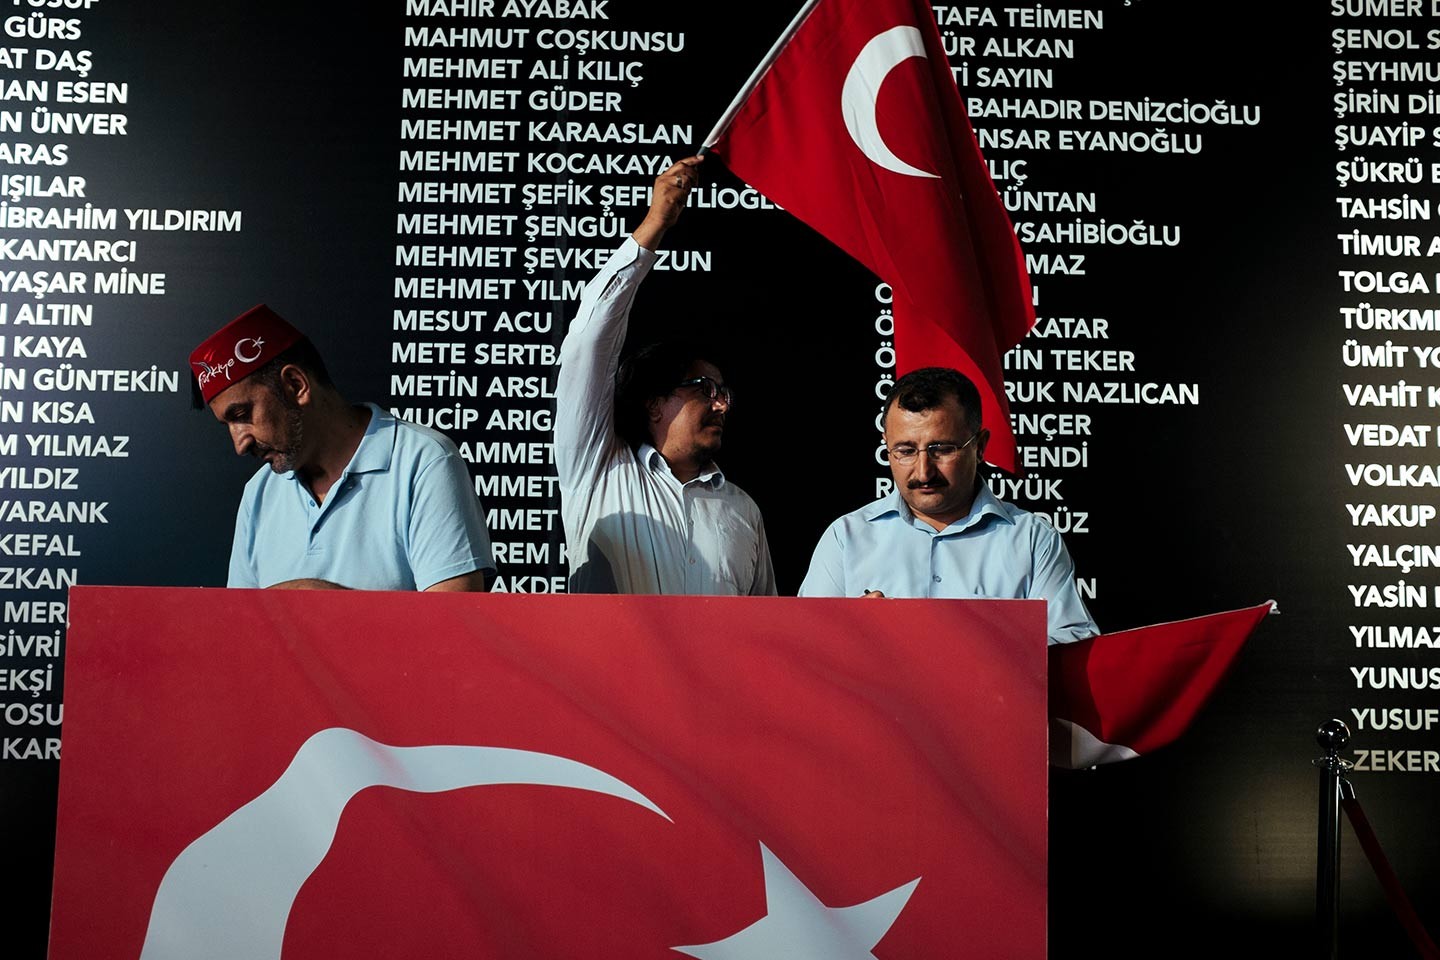 Les tensions France-Turquie sont une question de religion pour les  supporters d'Erdogan